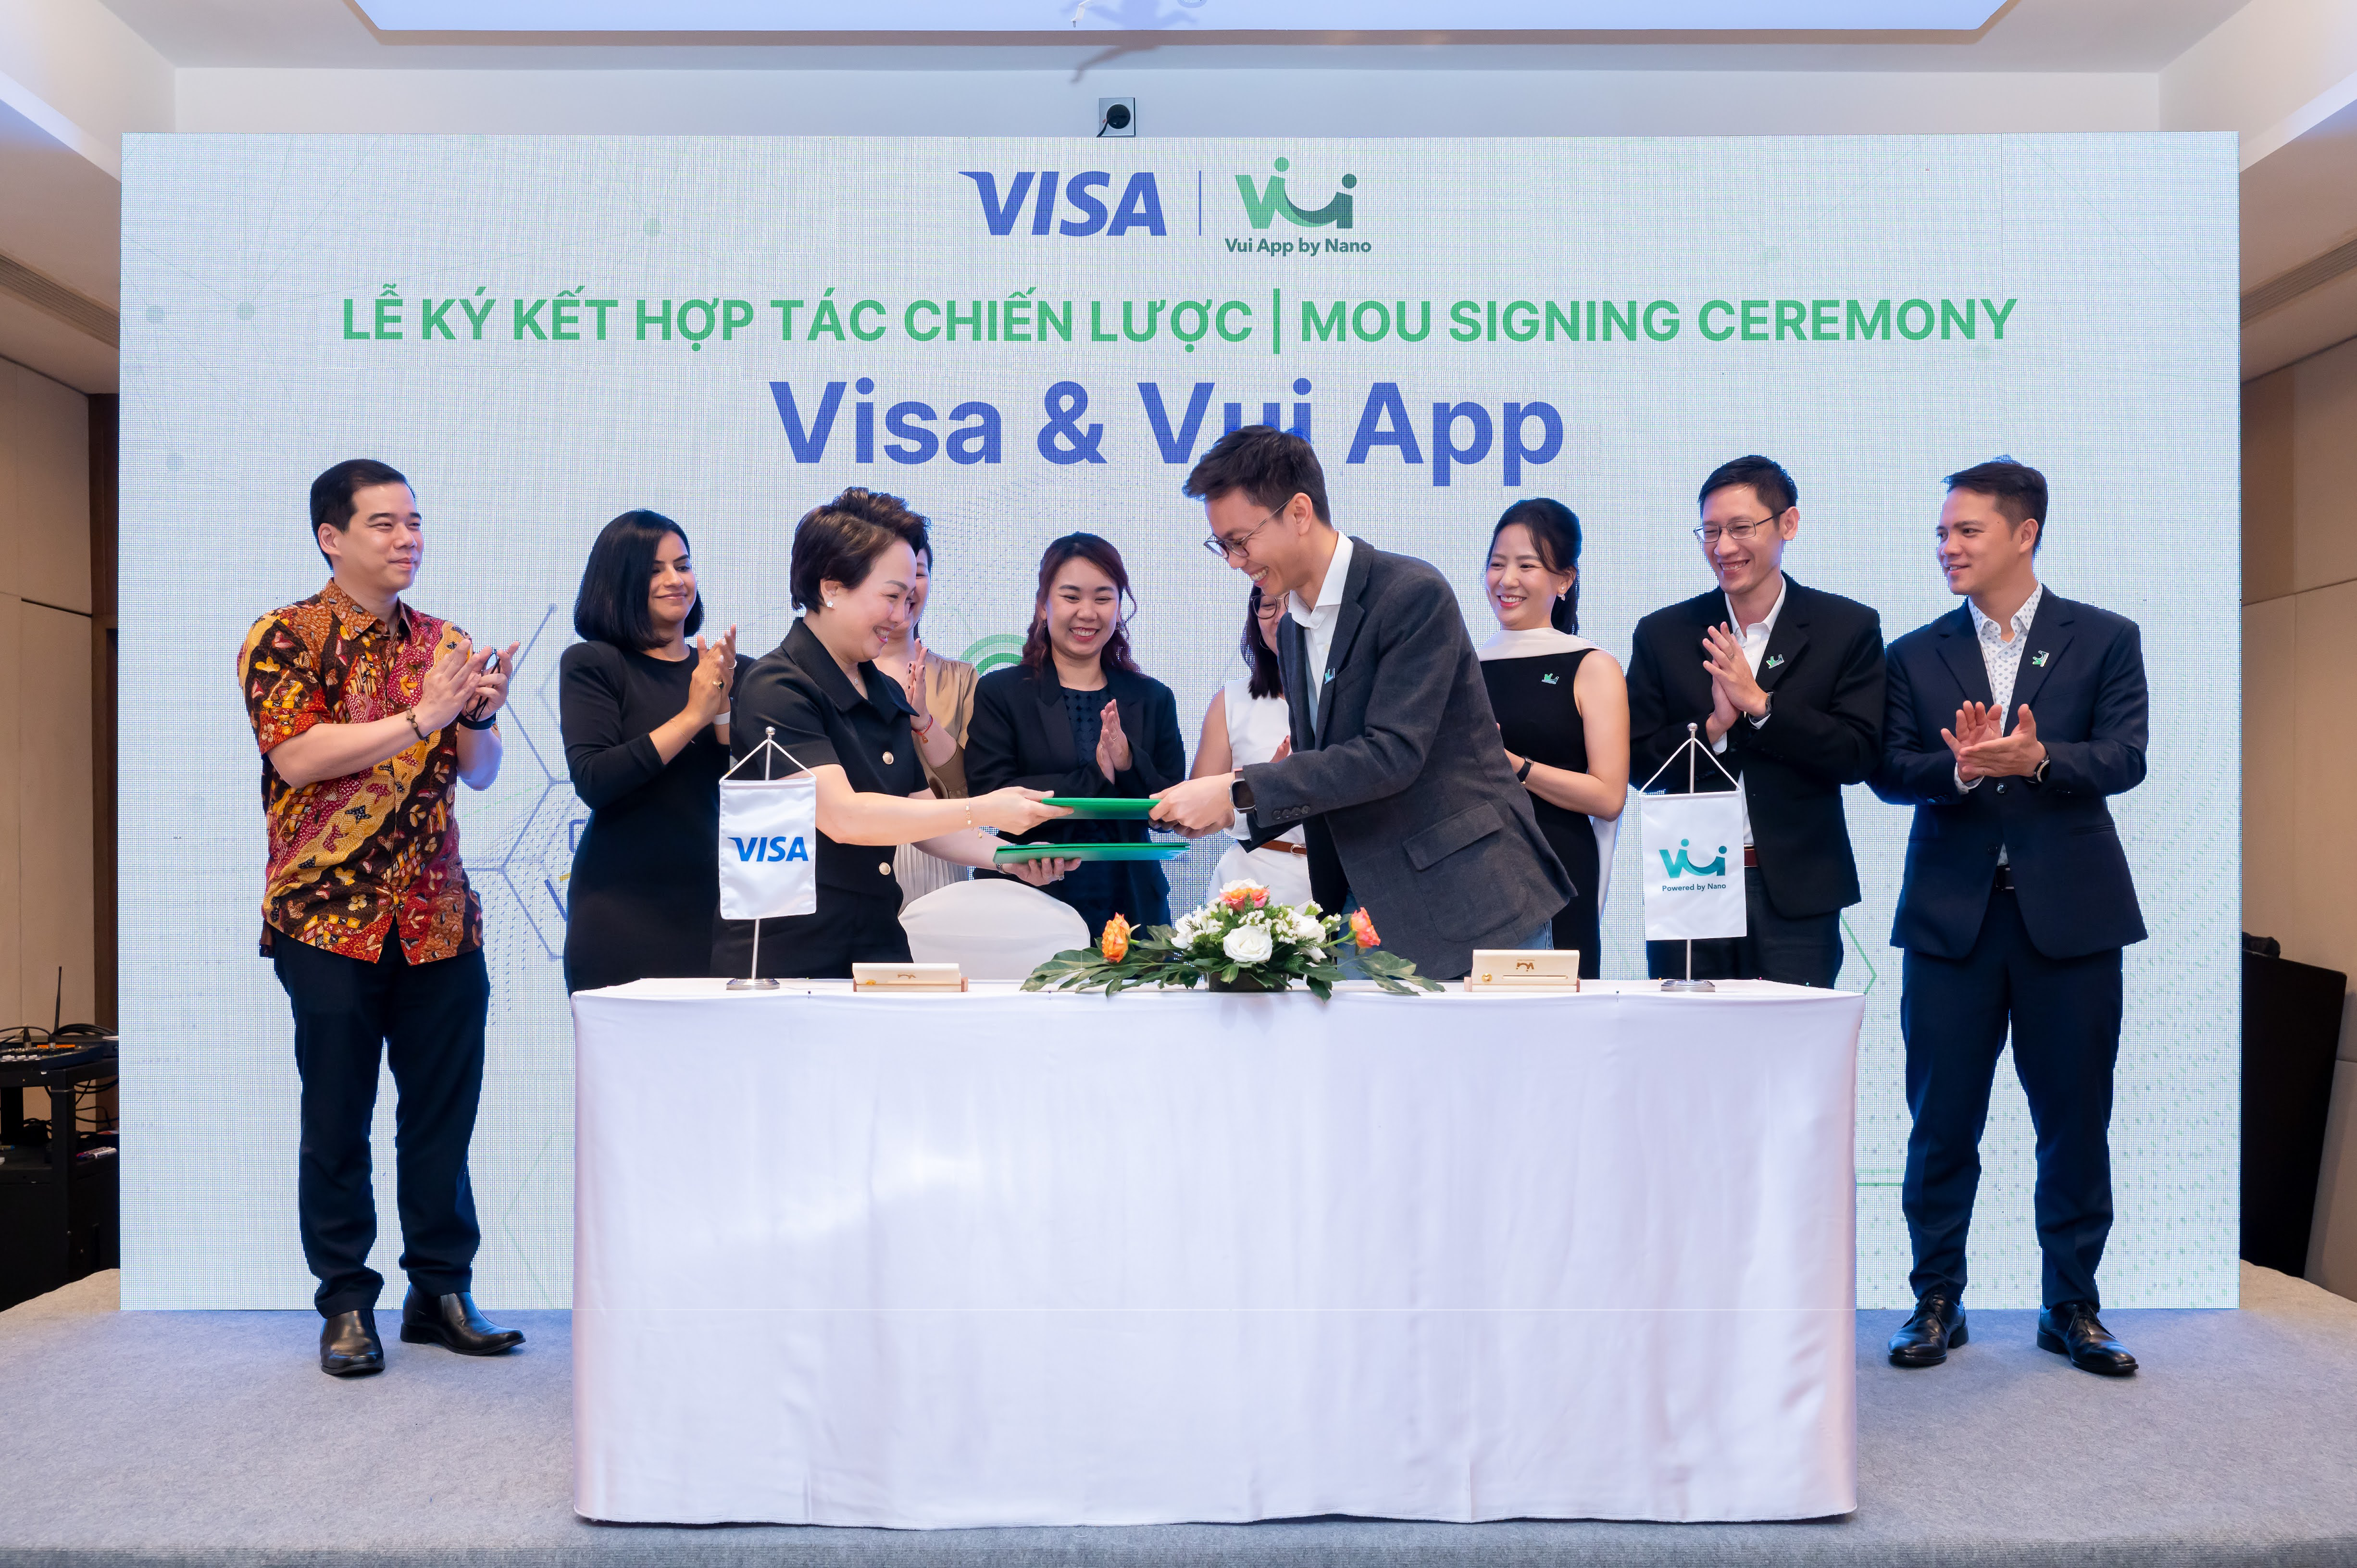 Visa cùng App Vui thúc đẩy sáng kiến Lương Linh Hoạt tại Việt Nam